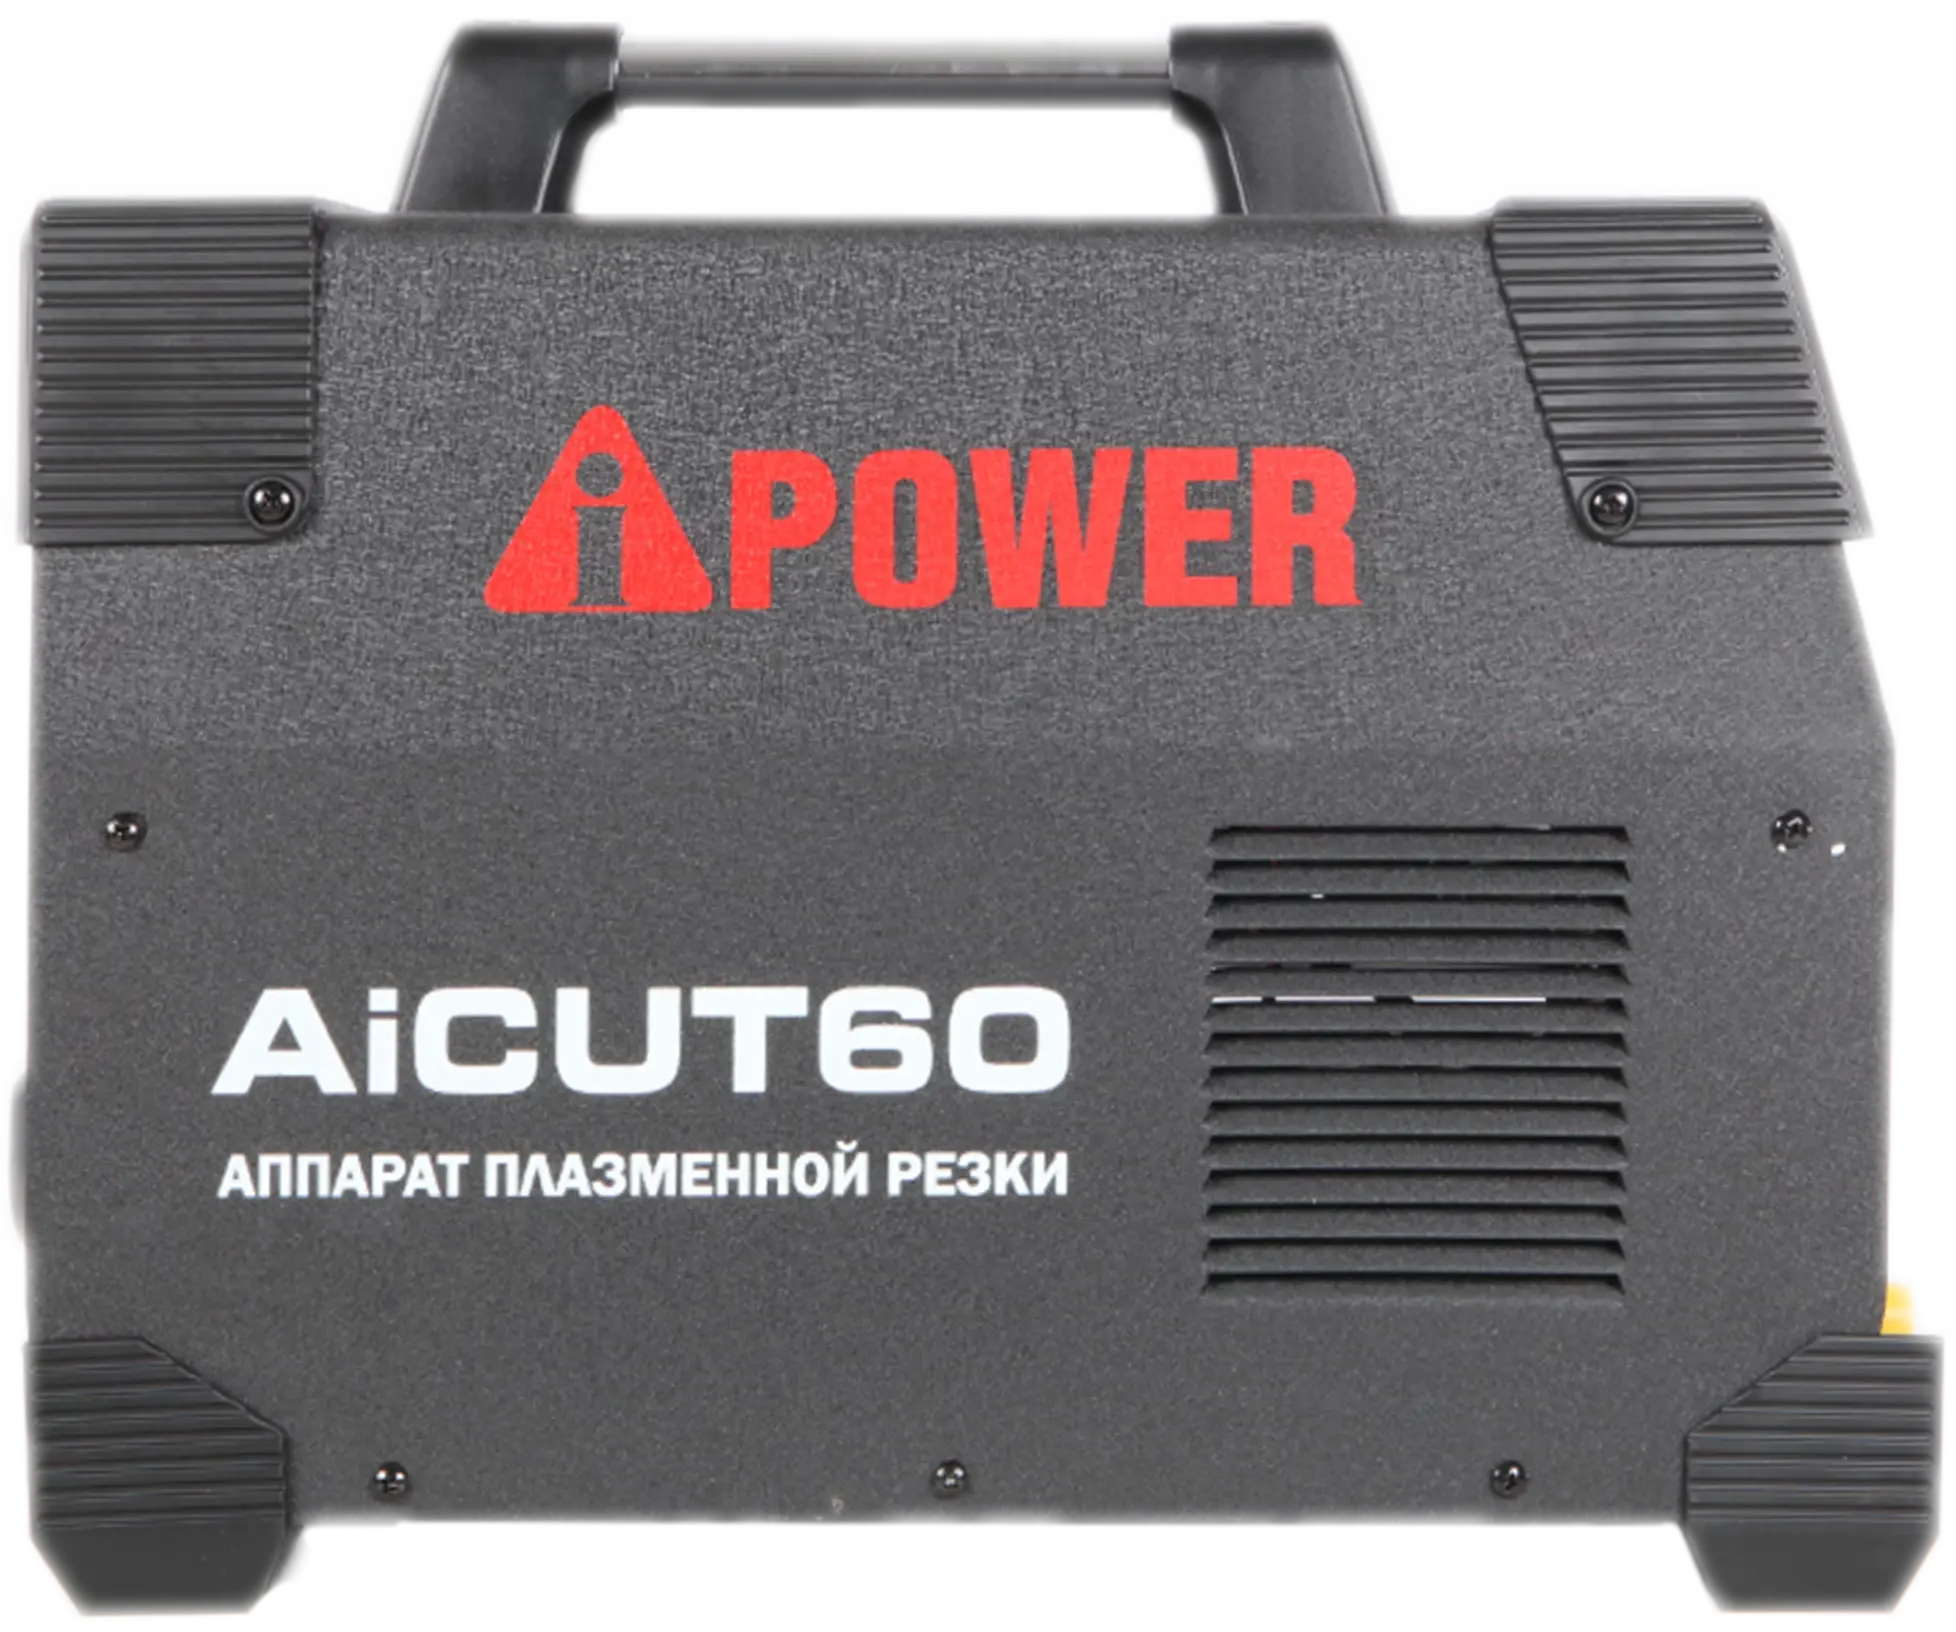 Аппарат плазменной резки A-IPOWER AICUT60 Гарантия 4 года Официальный магазин